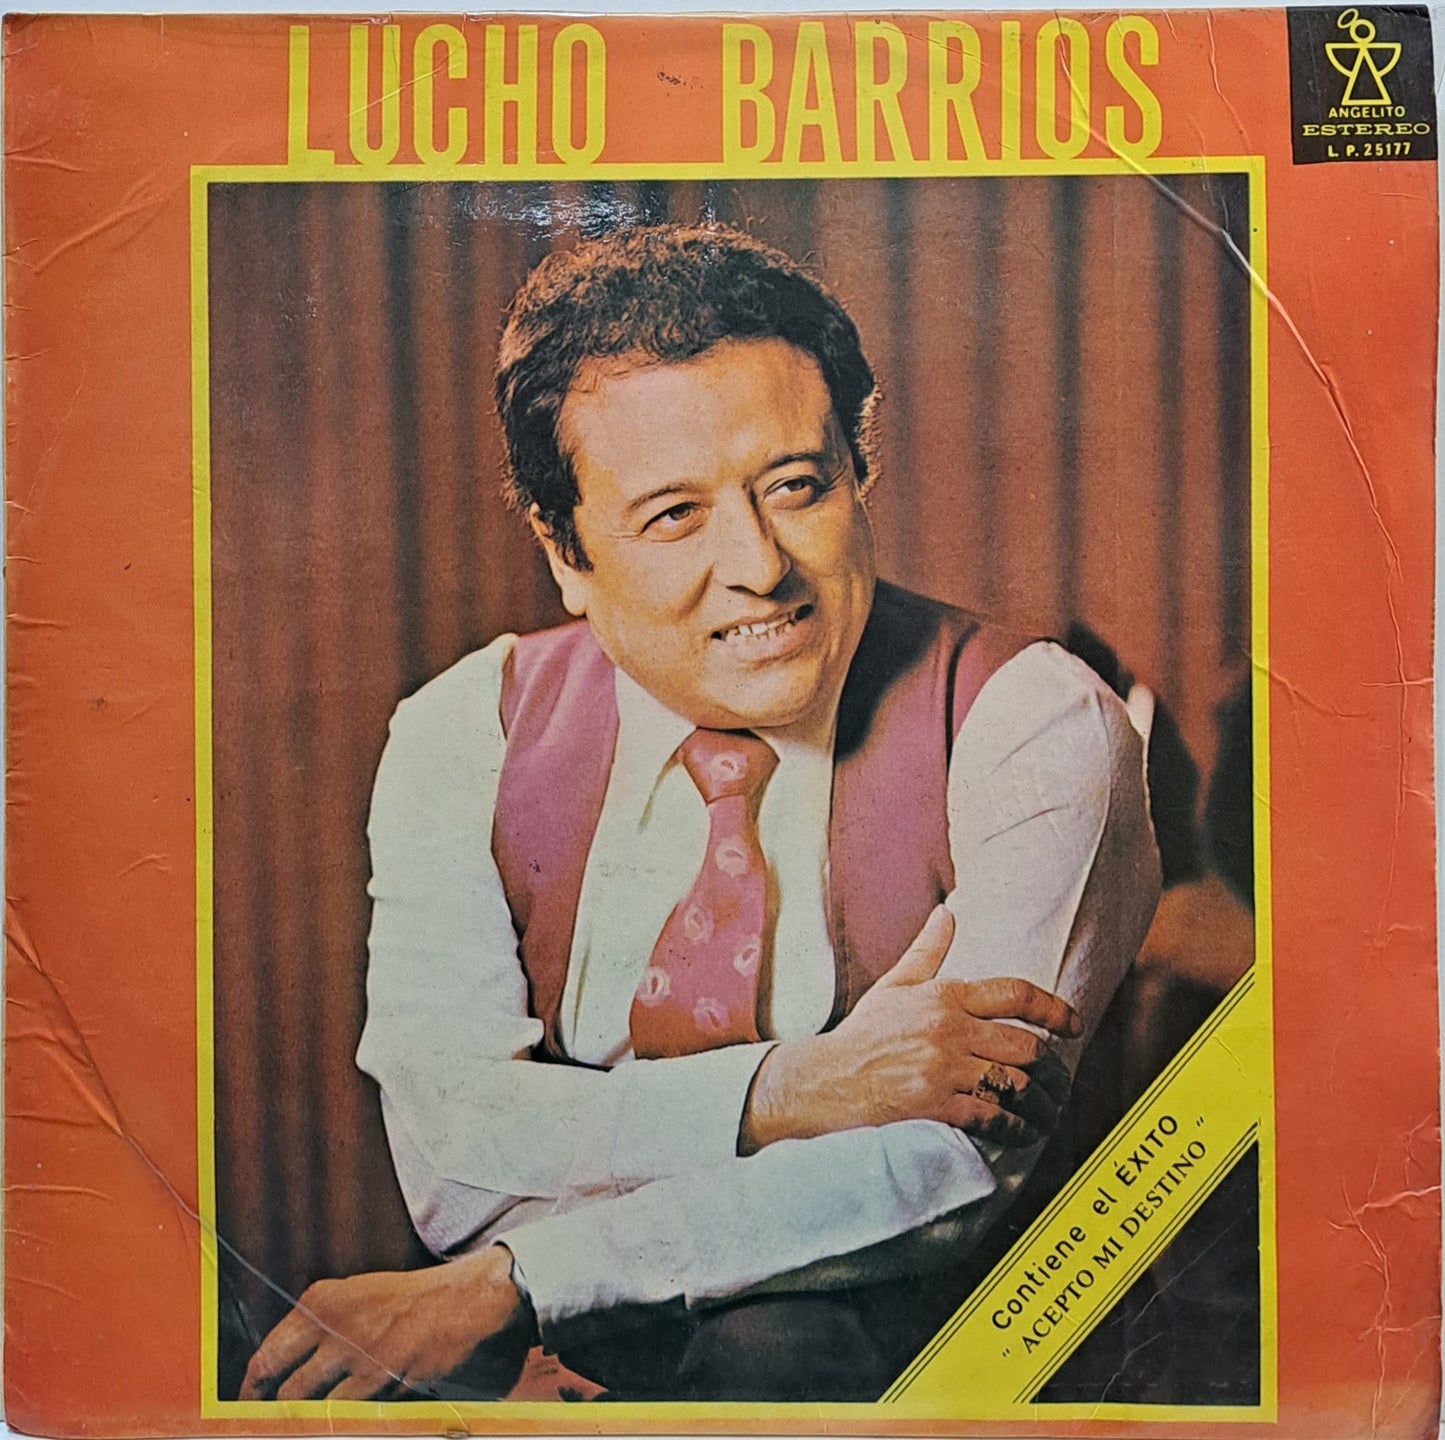 LUCHO BARRIOS - LUCHO BARRIOS LP